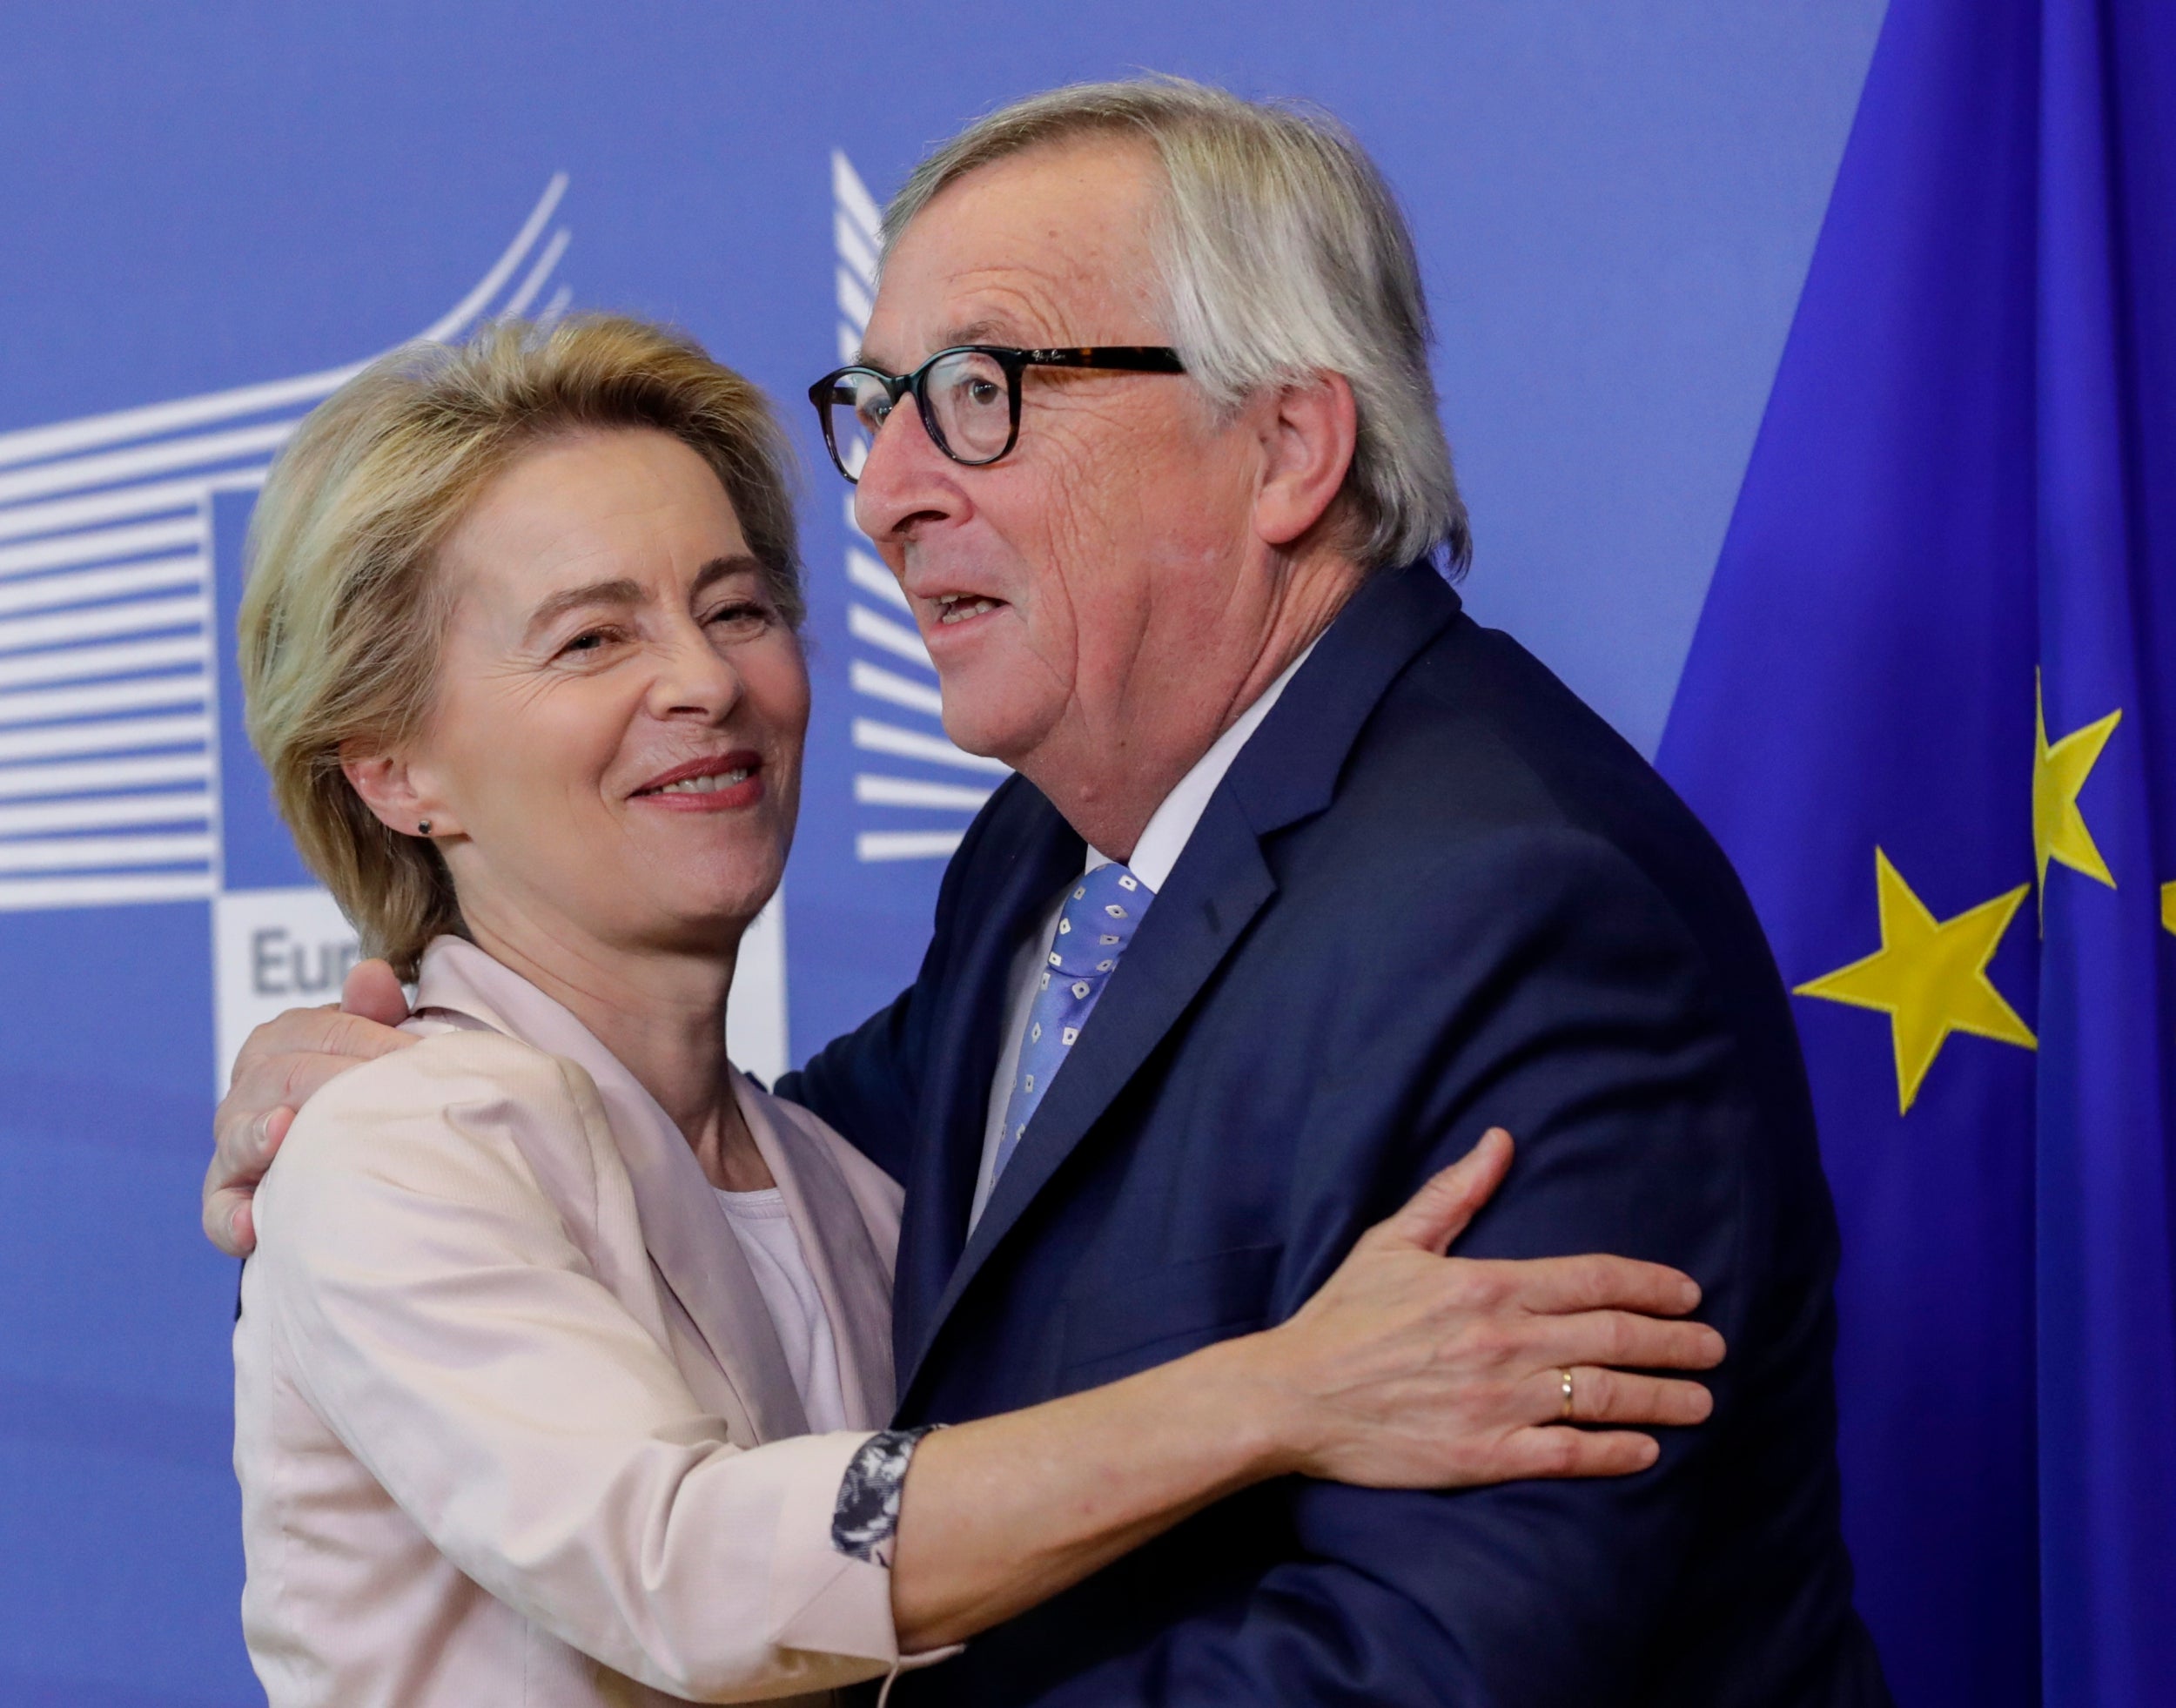 Jean-Claude Juncker with Ursula von der Leyen, his incoming replacement